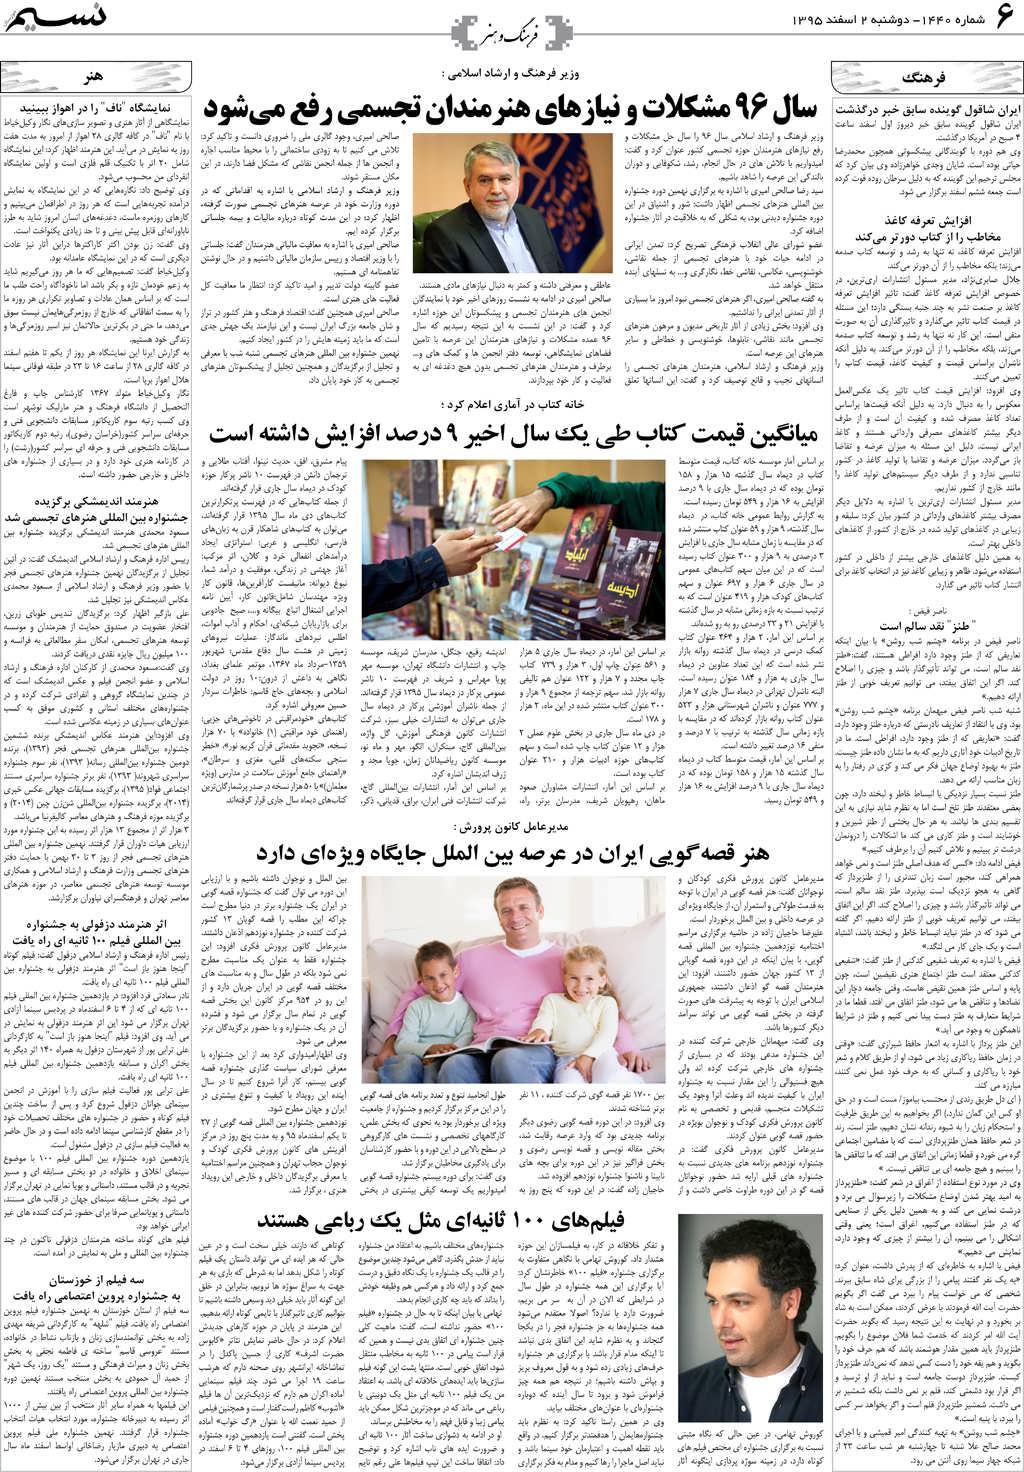 صفحه فرهنگ و هنر روزنامه نسیم شماره 1440